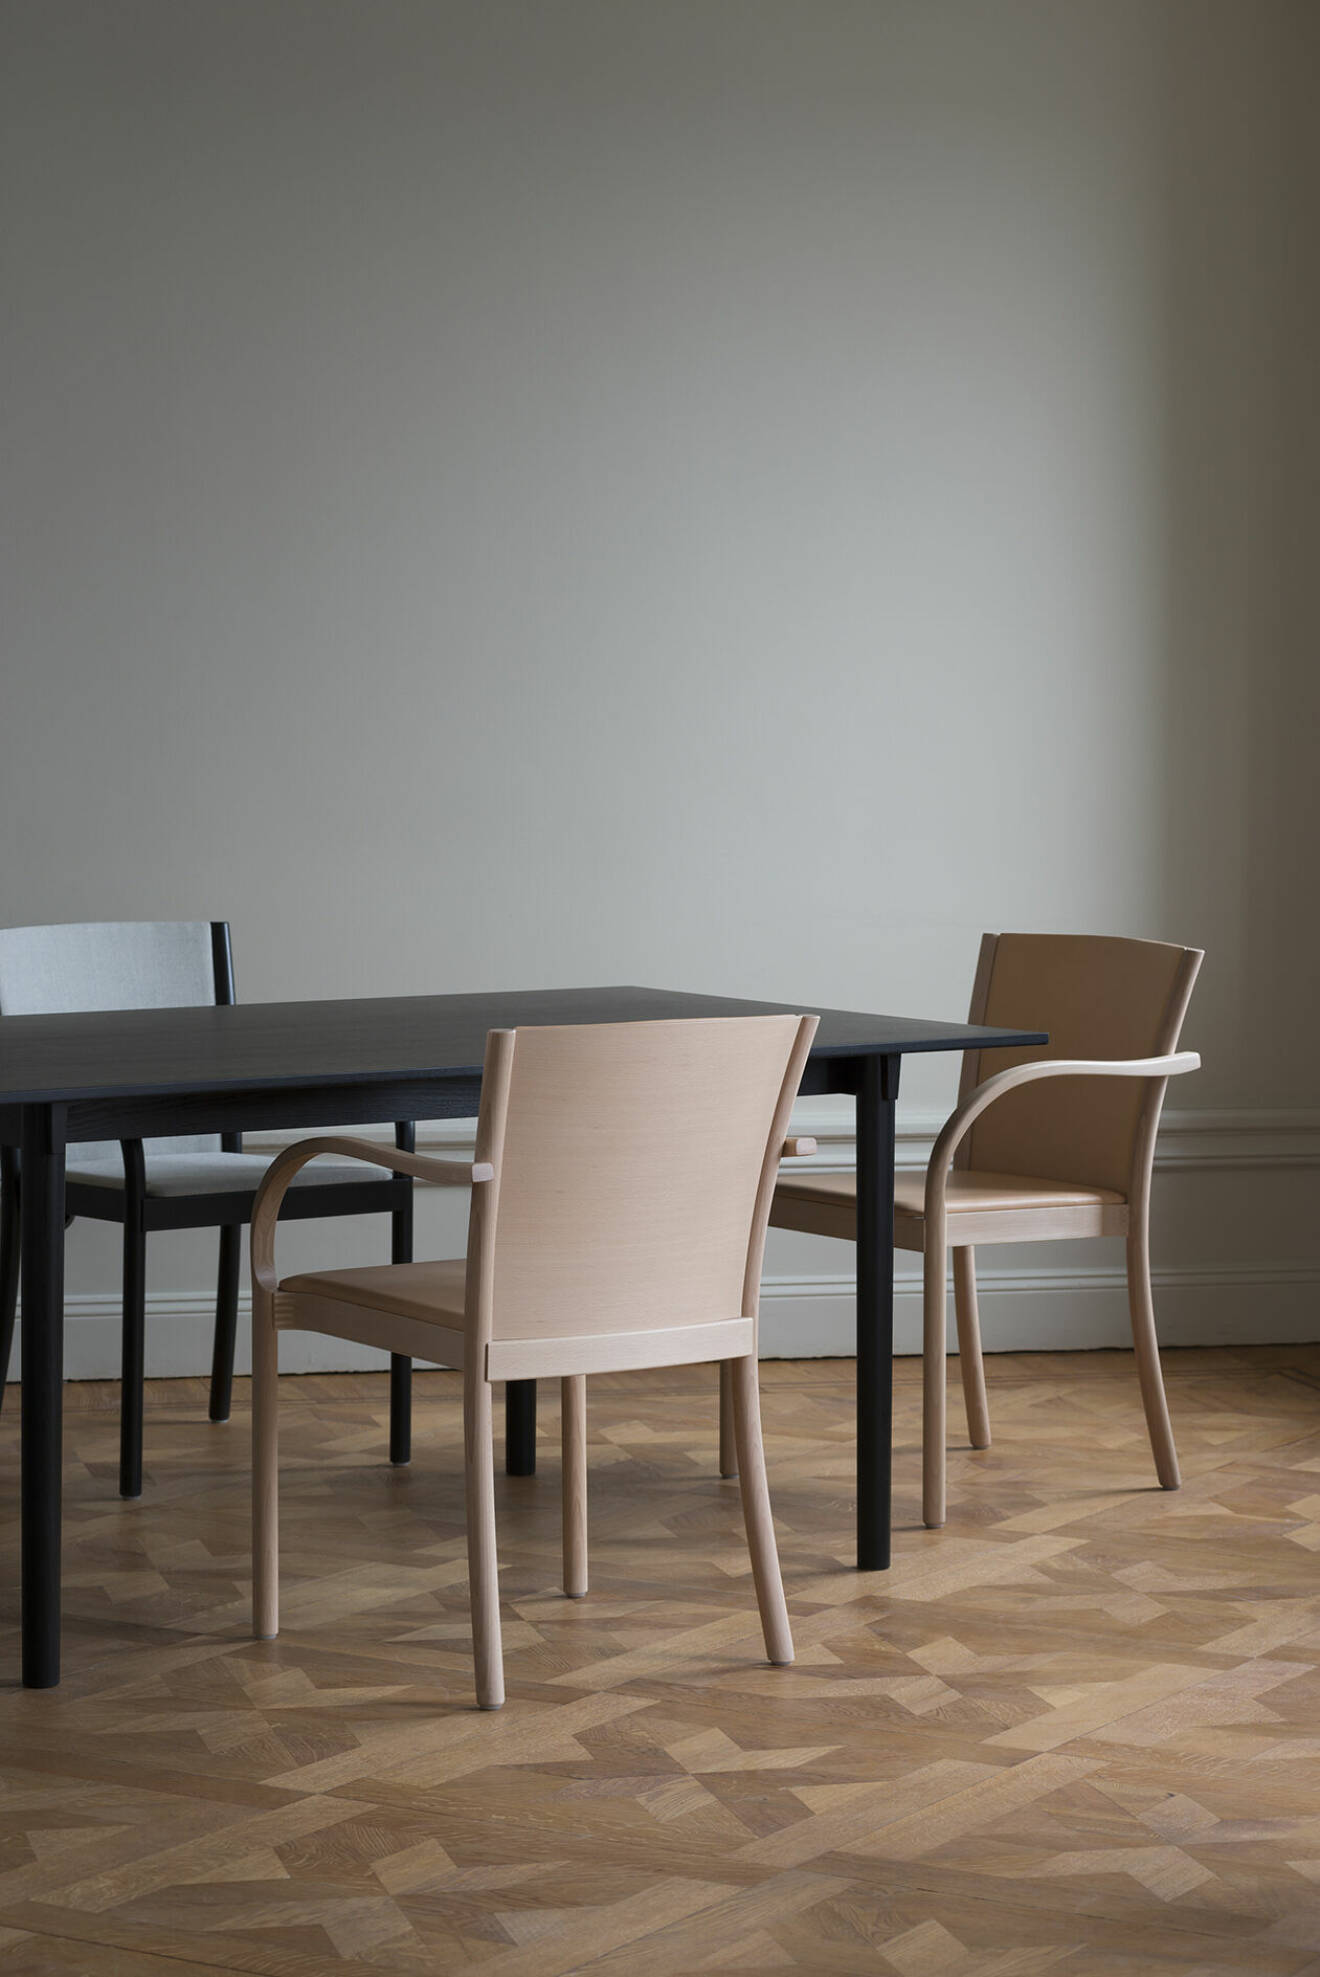 Redan som 14-åring skapade Åke Axelsson sin första möbel och över 75 år senare har hans stolar möblerat det berömda folkhemmet.